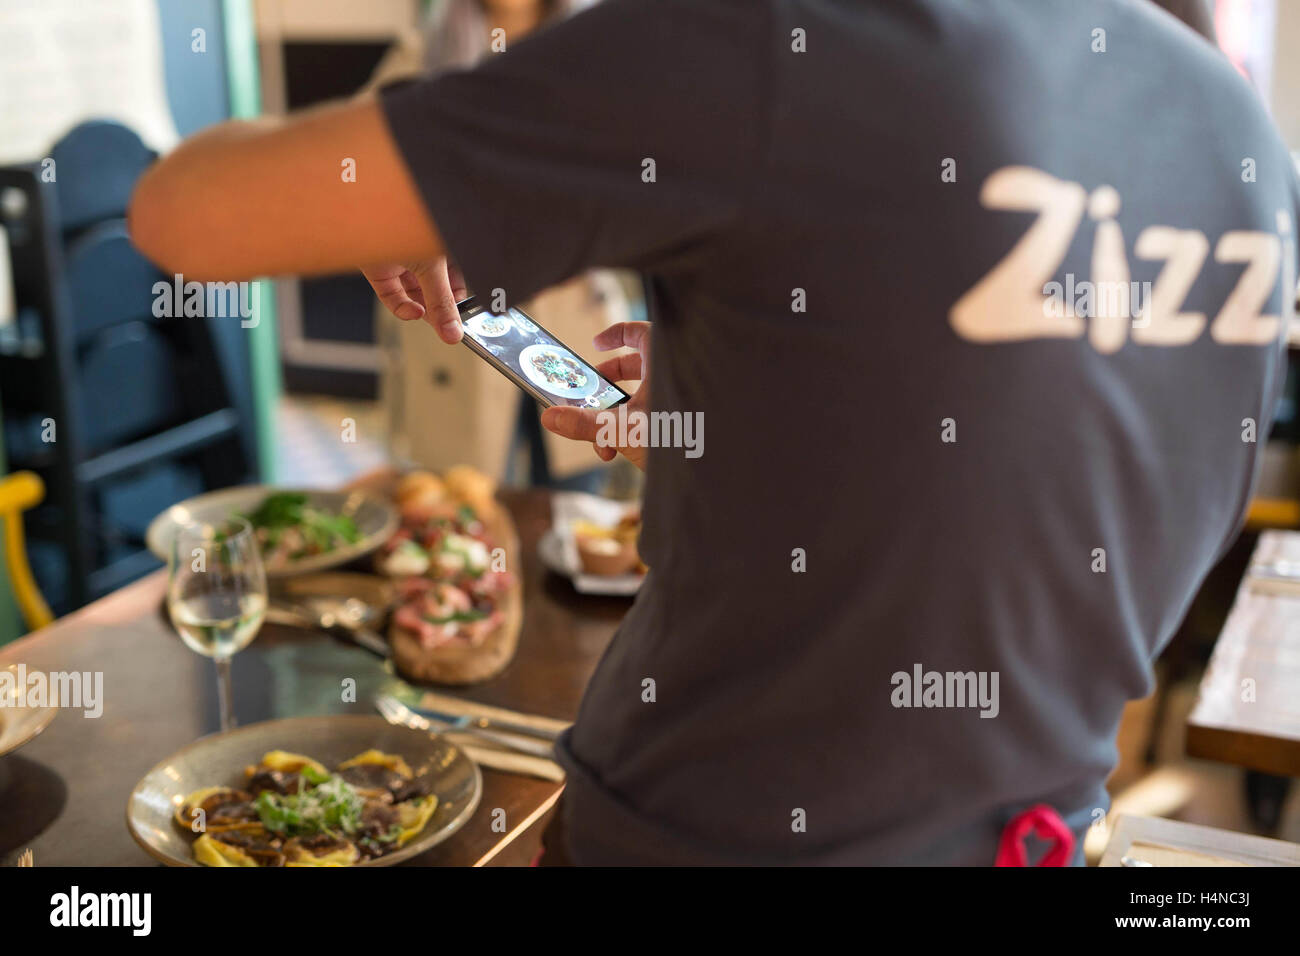 NUR zur redaktionellen Nutzung Social Media Influencer Leanne Lim Walker, 27, bildet Restaurantpersonal bei Zizzi im Londoner Covent Garden, wie die italienischen Kette aktiv soziale kulinarischen Trend fotografieren Ihre Mahlzeiten auf Instagram zu teilen. Stockfoto